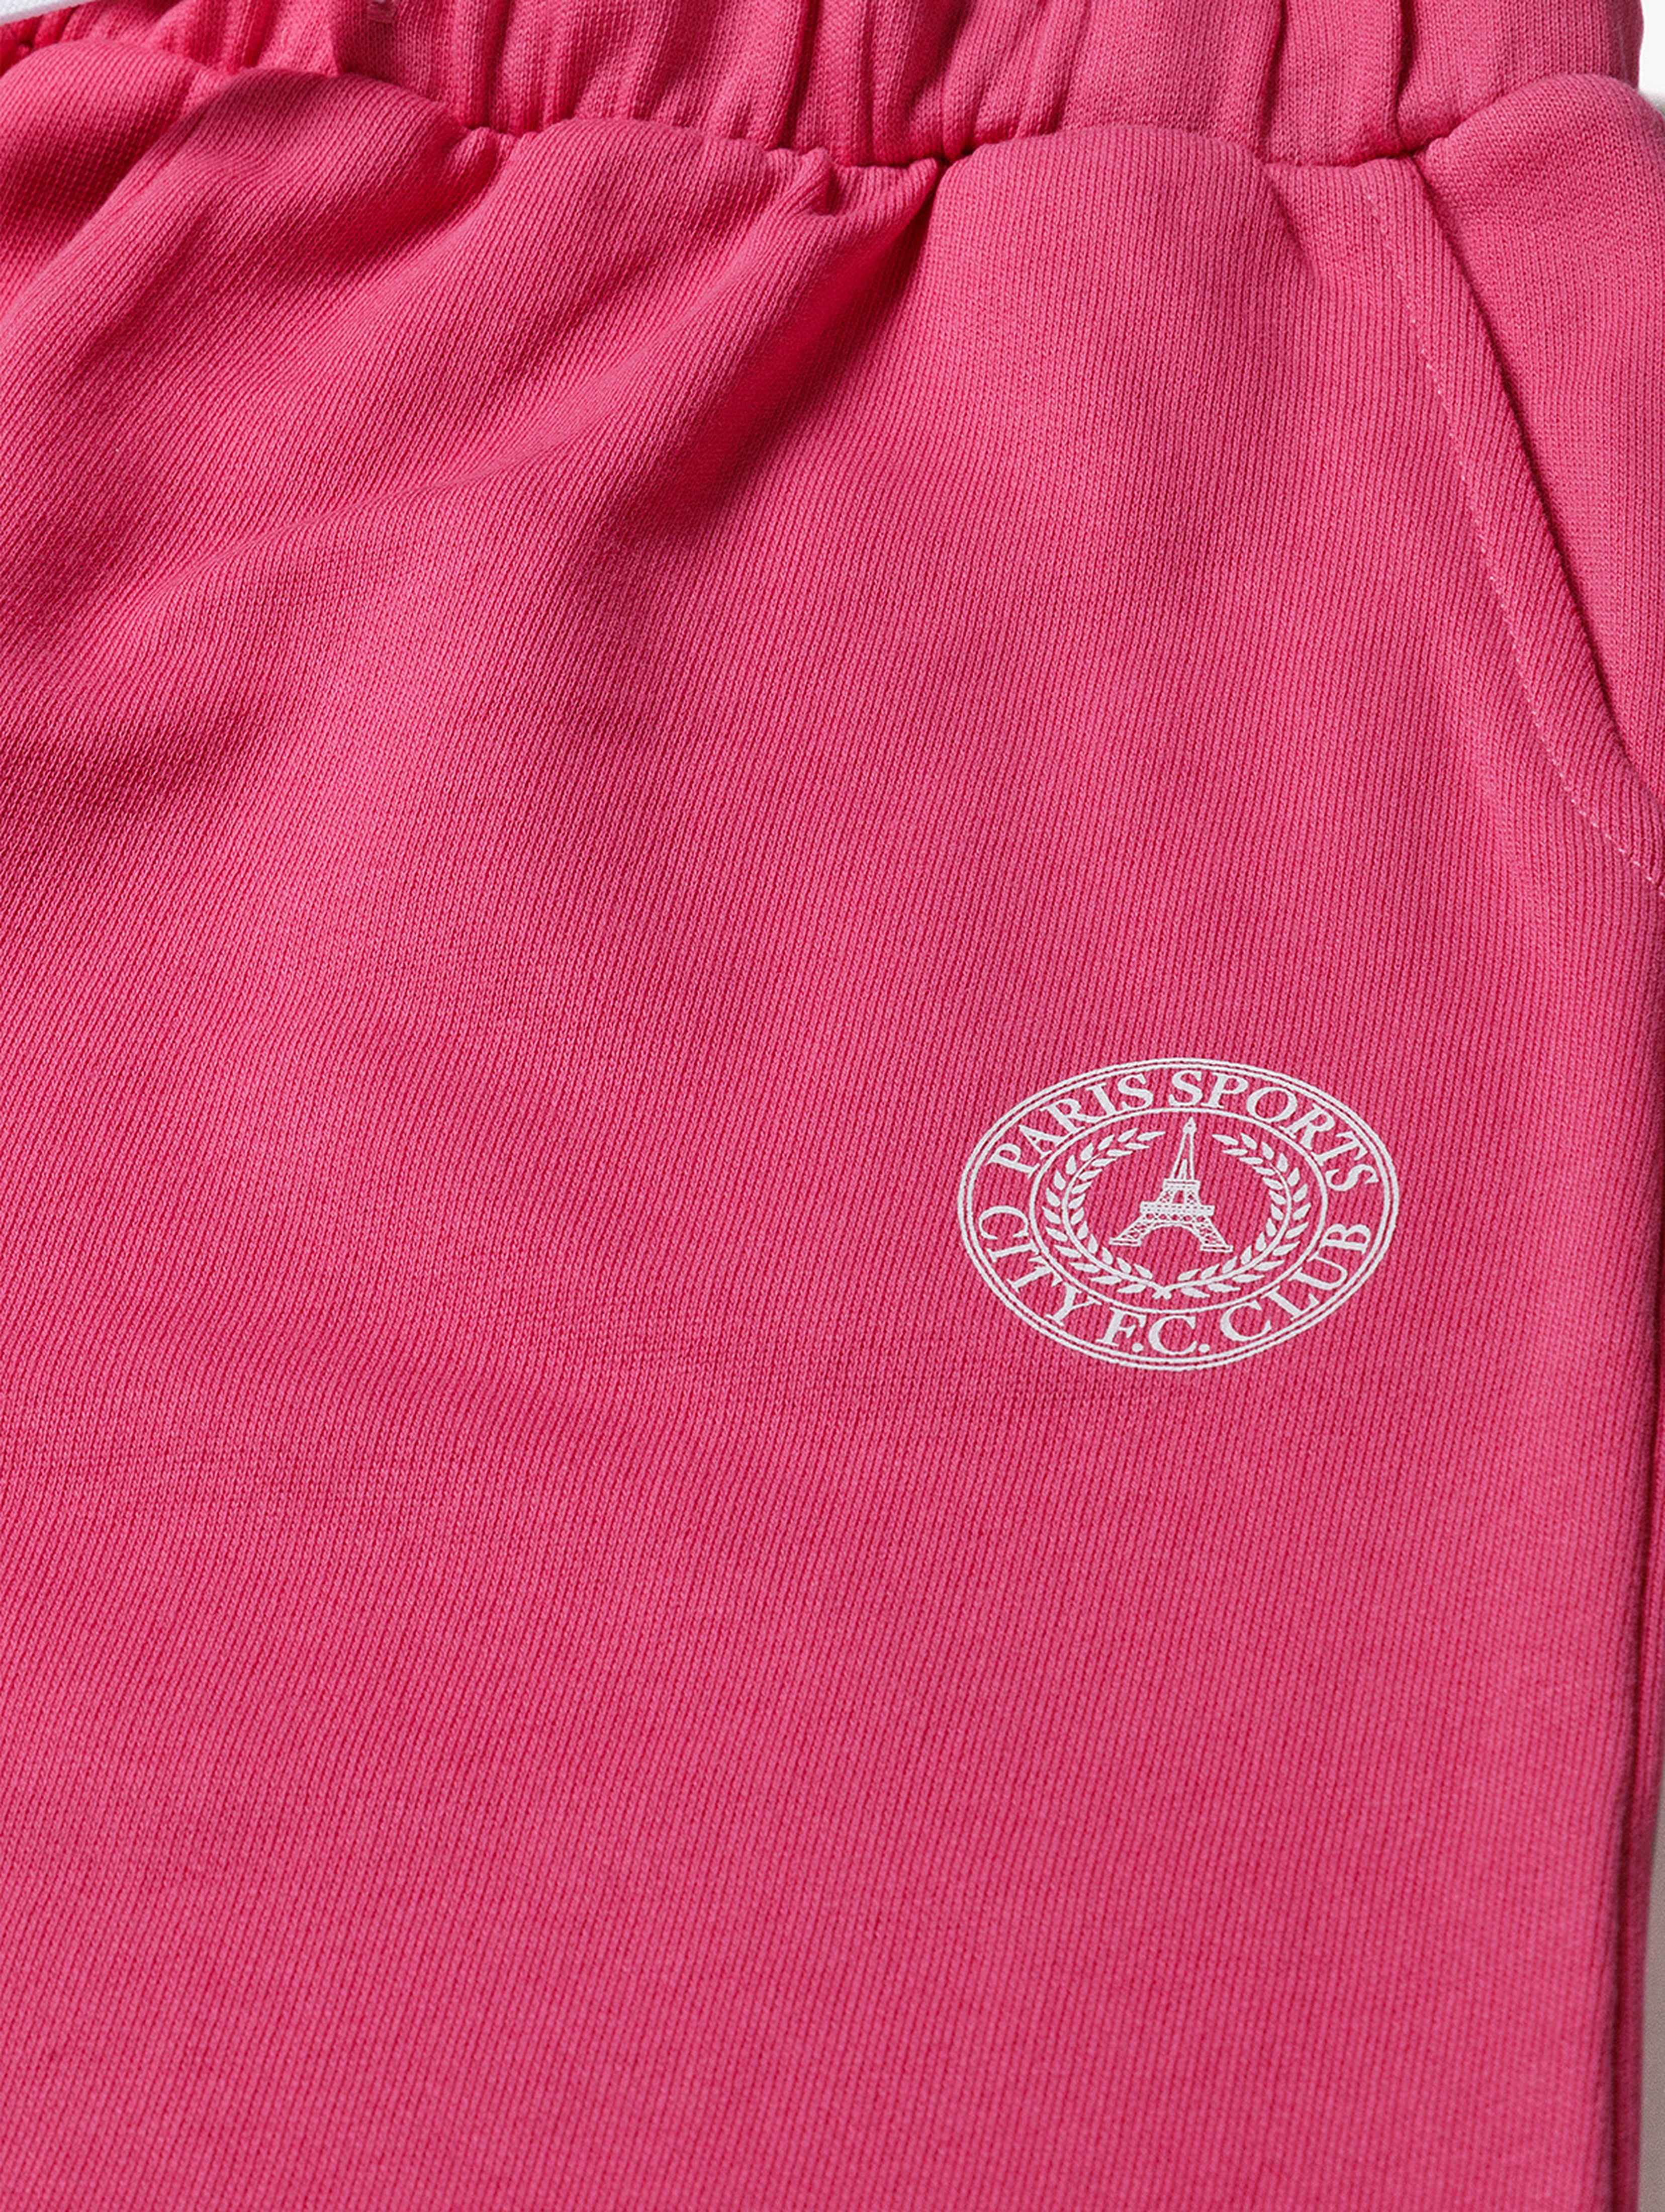 Spodnie dresowe różowe i granatowe - Limited Edition